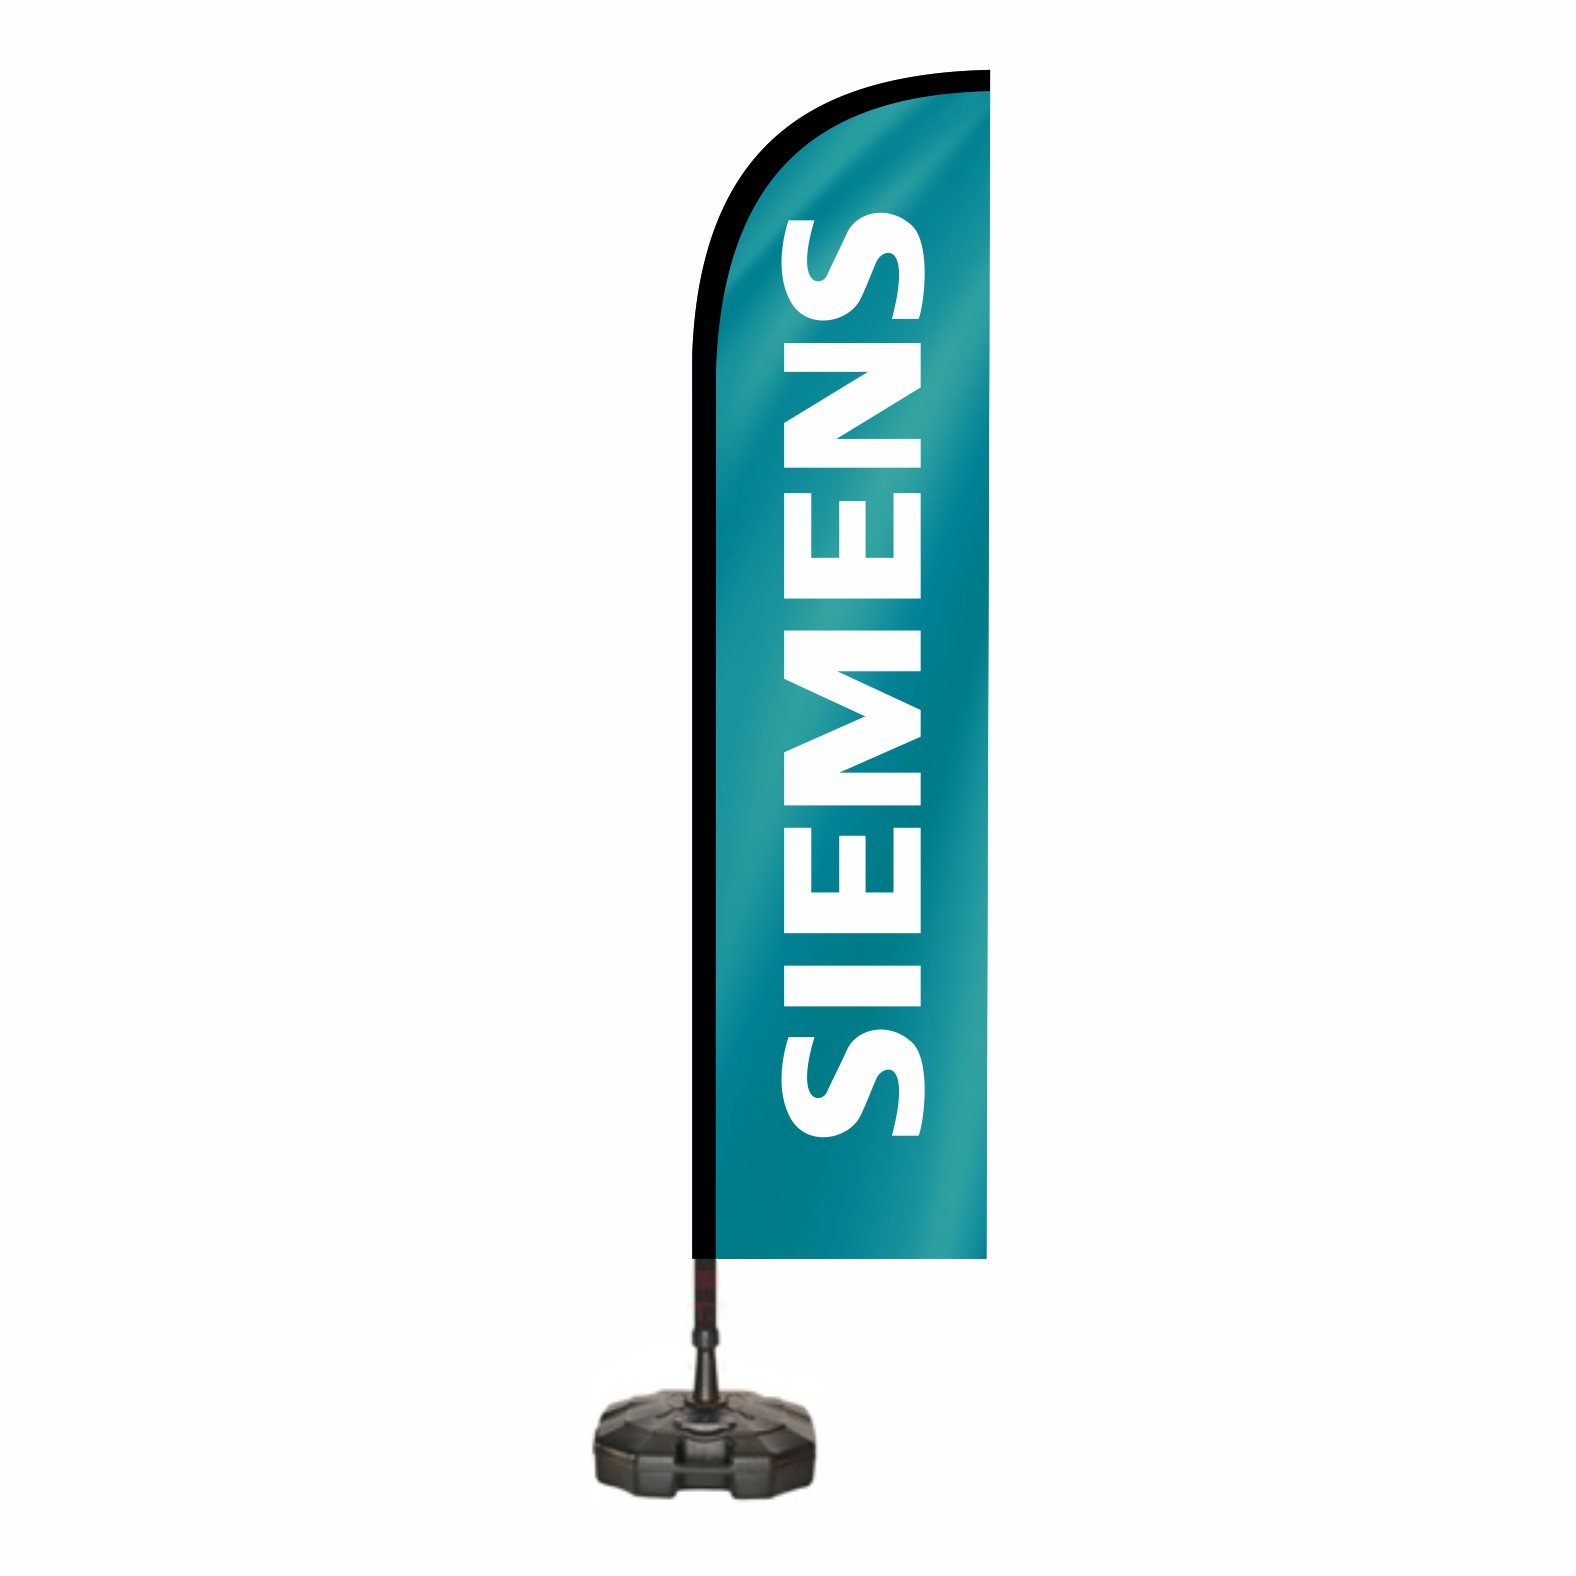 Siemens Yelken Bayraklar Ne Demektir